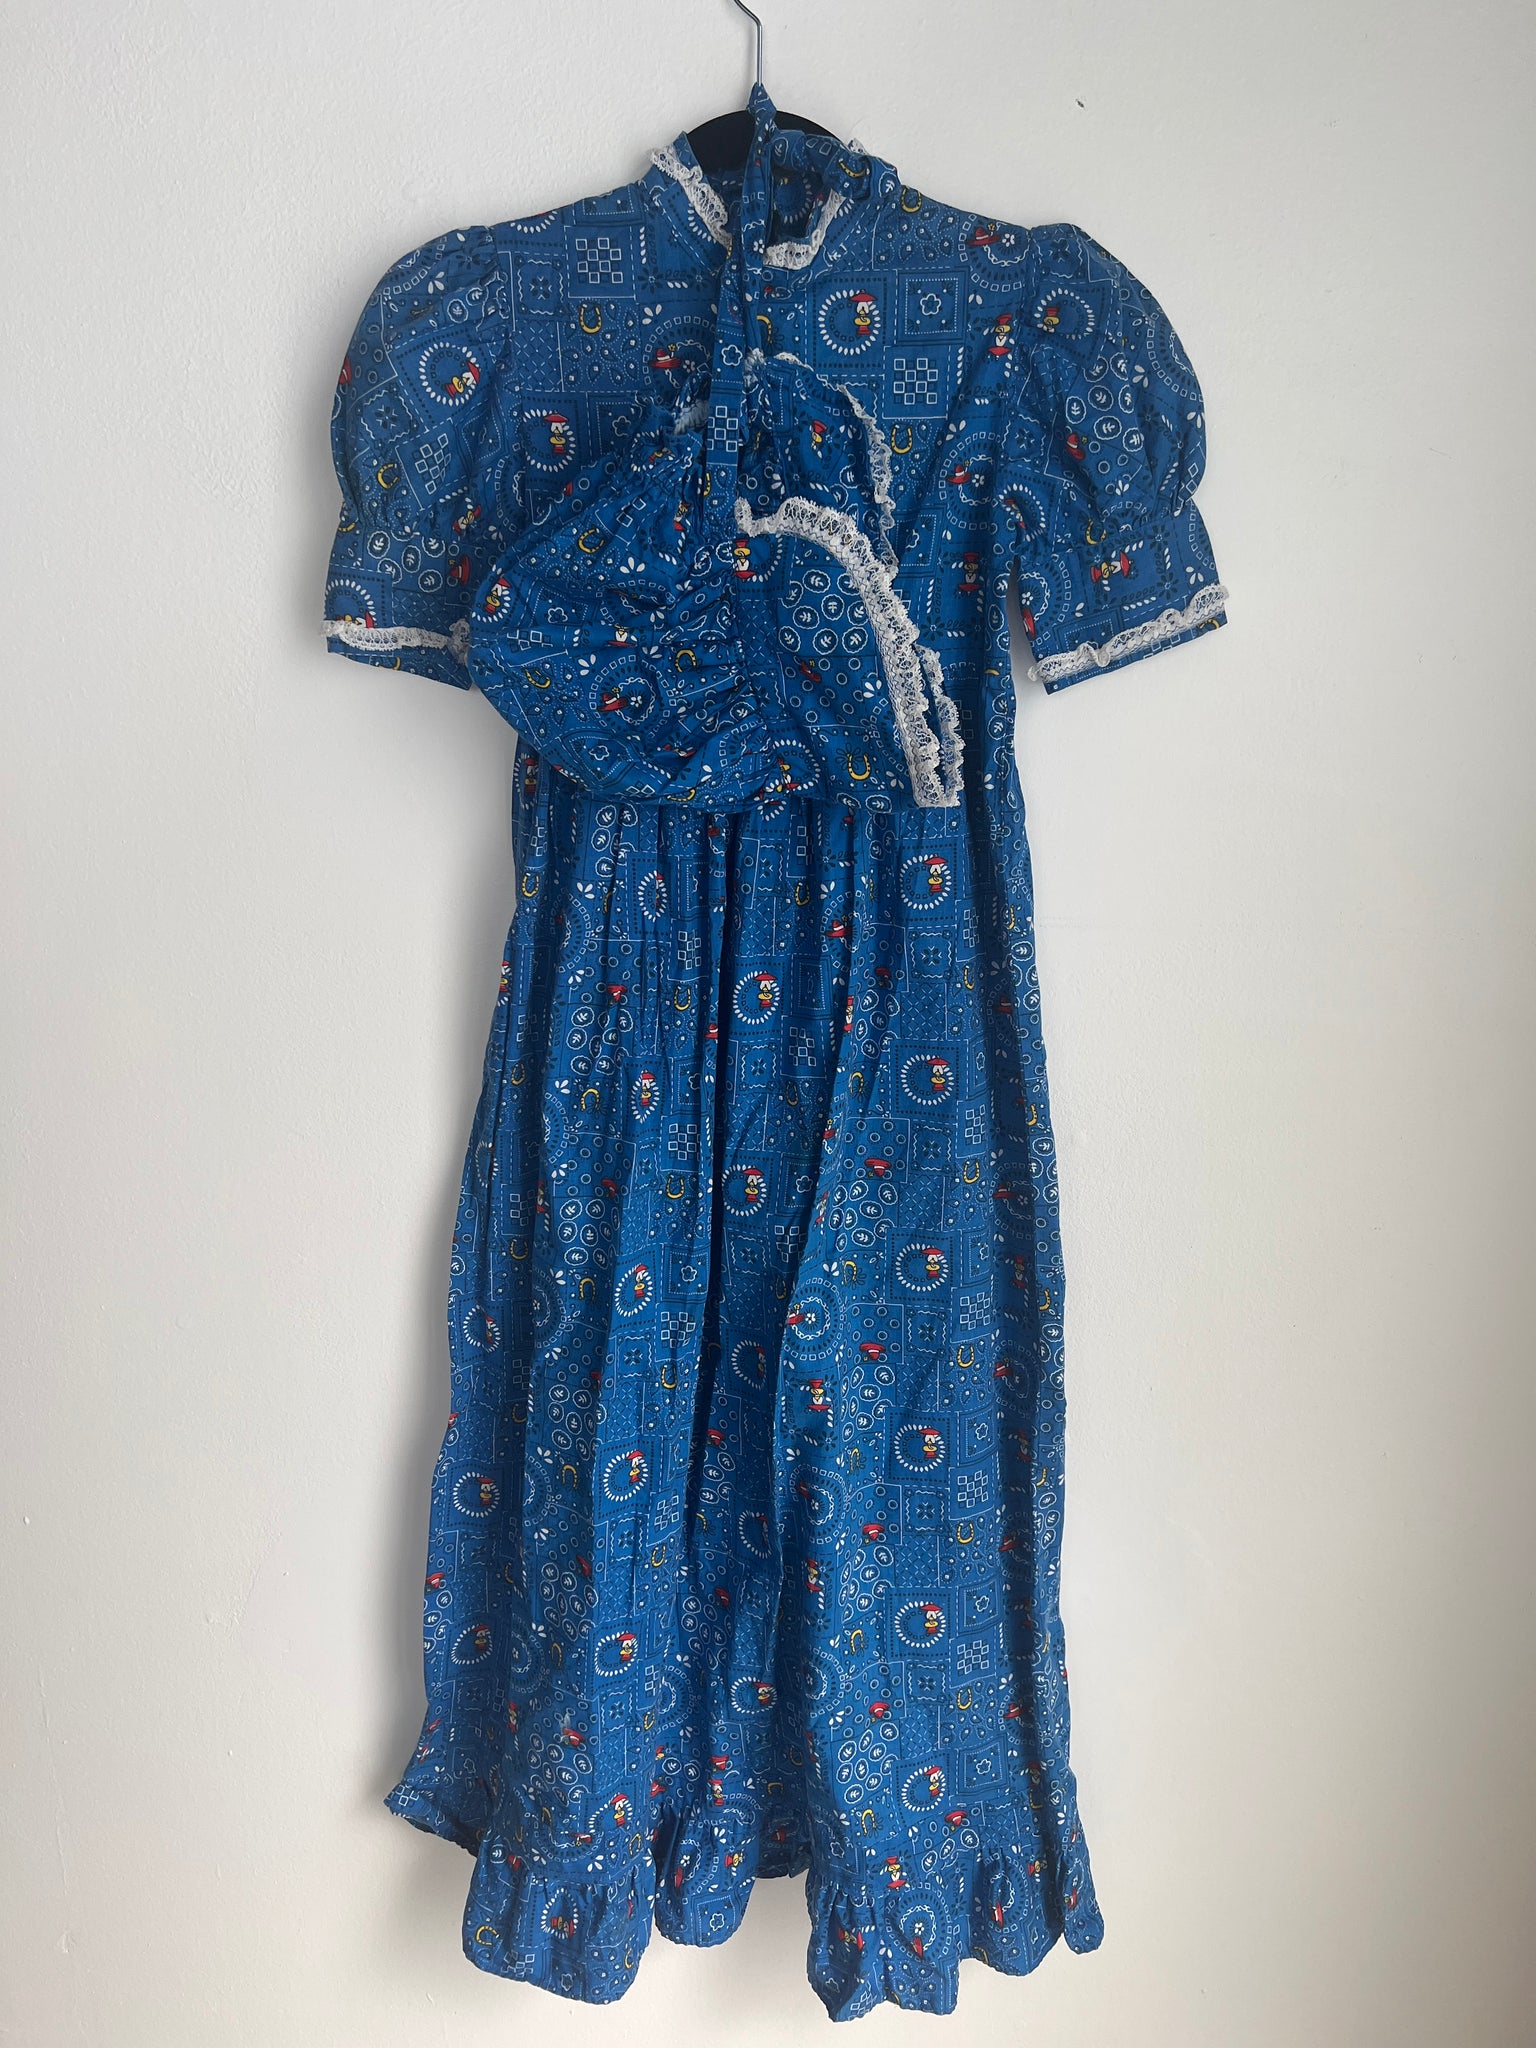 1960s KIDS DRESS- cottage core blue print maxi w/ Bonnet